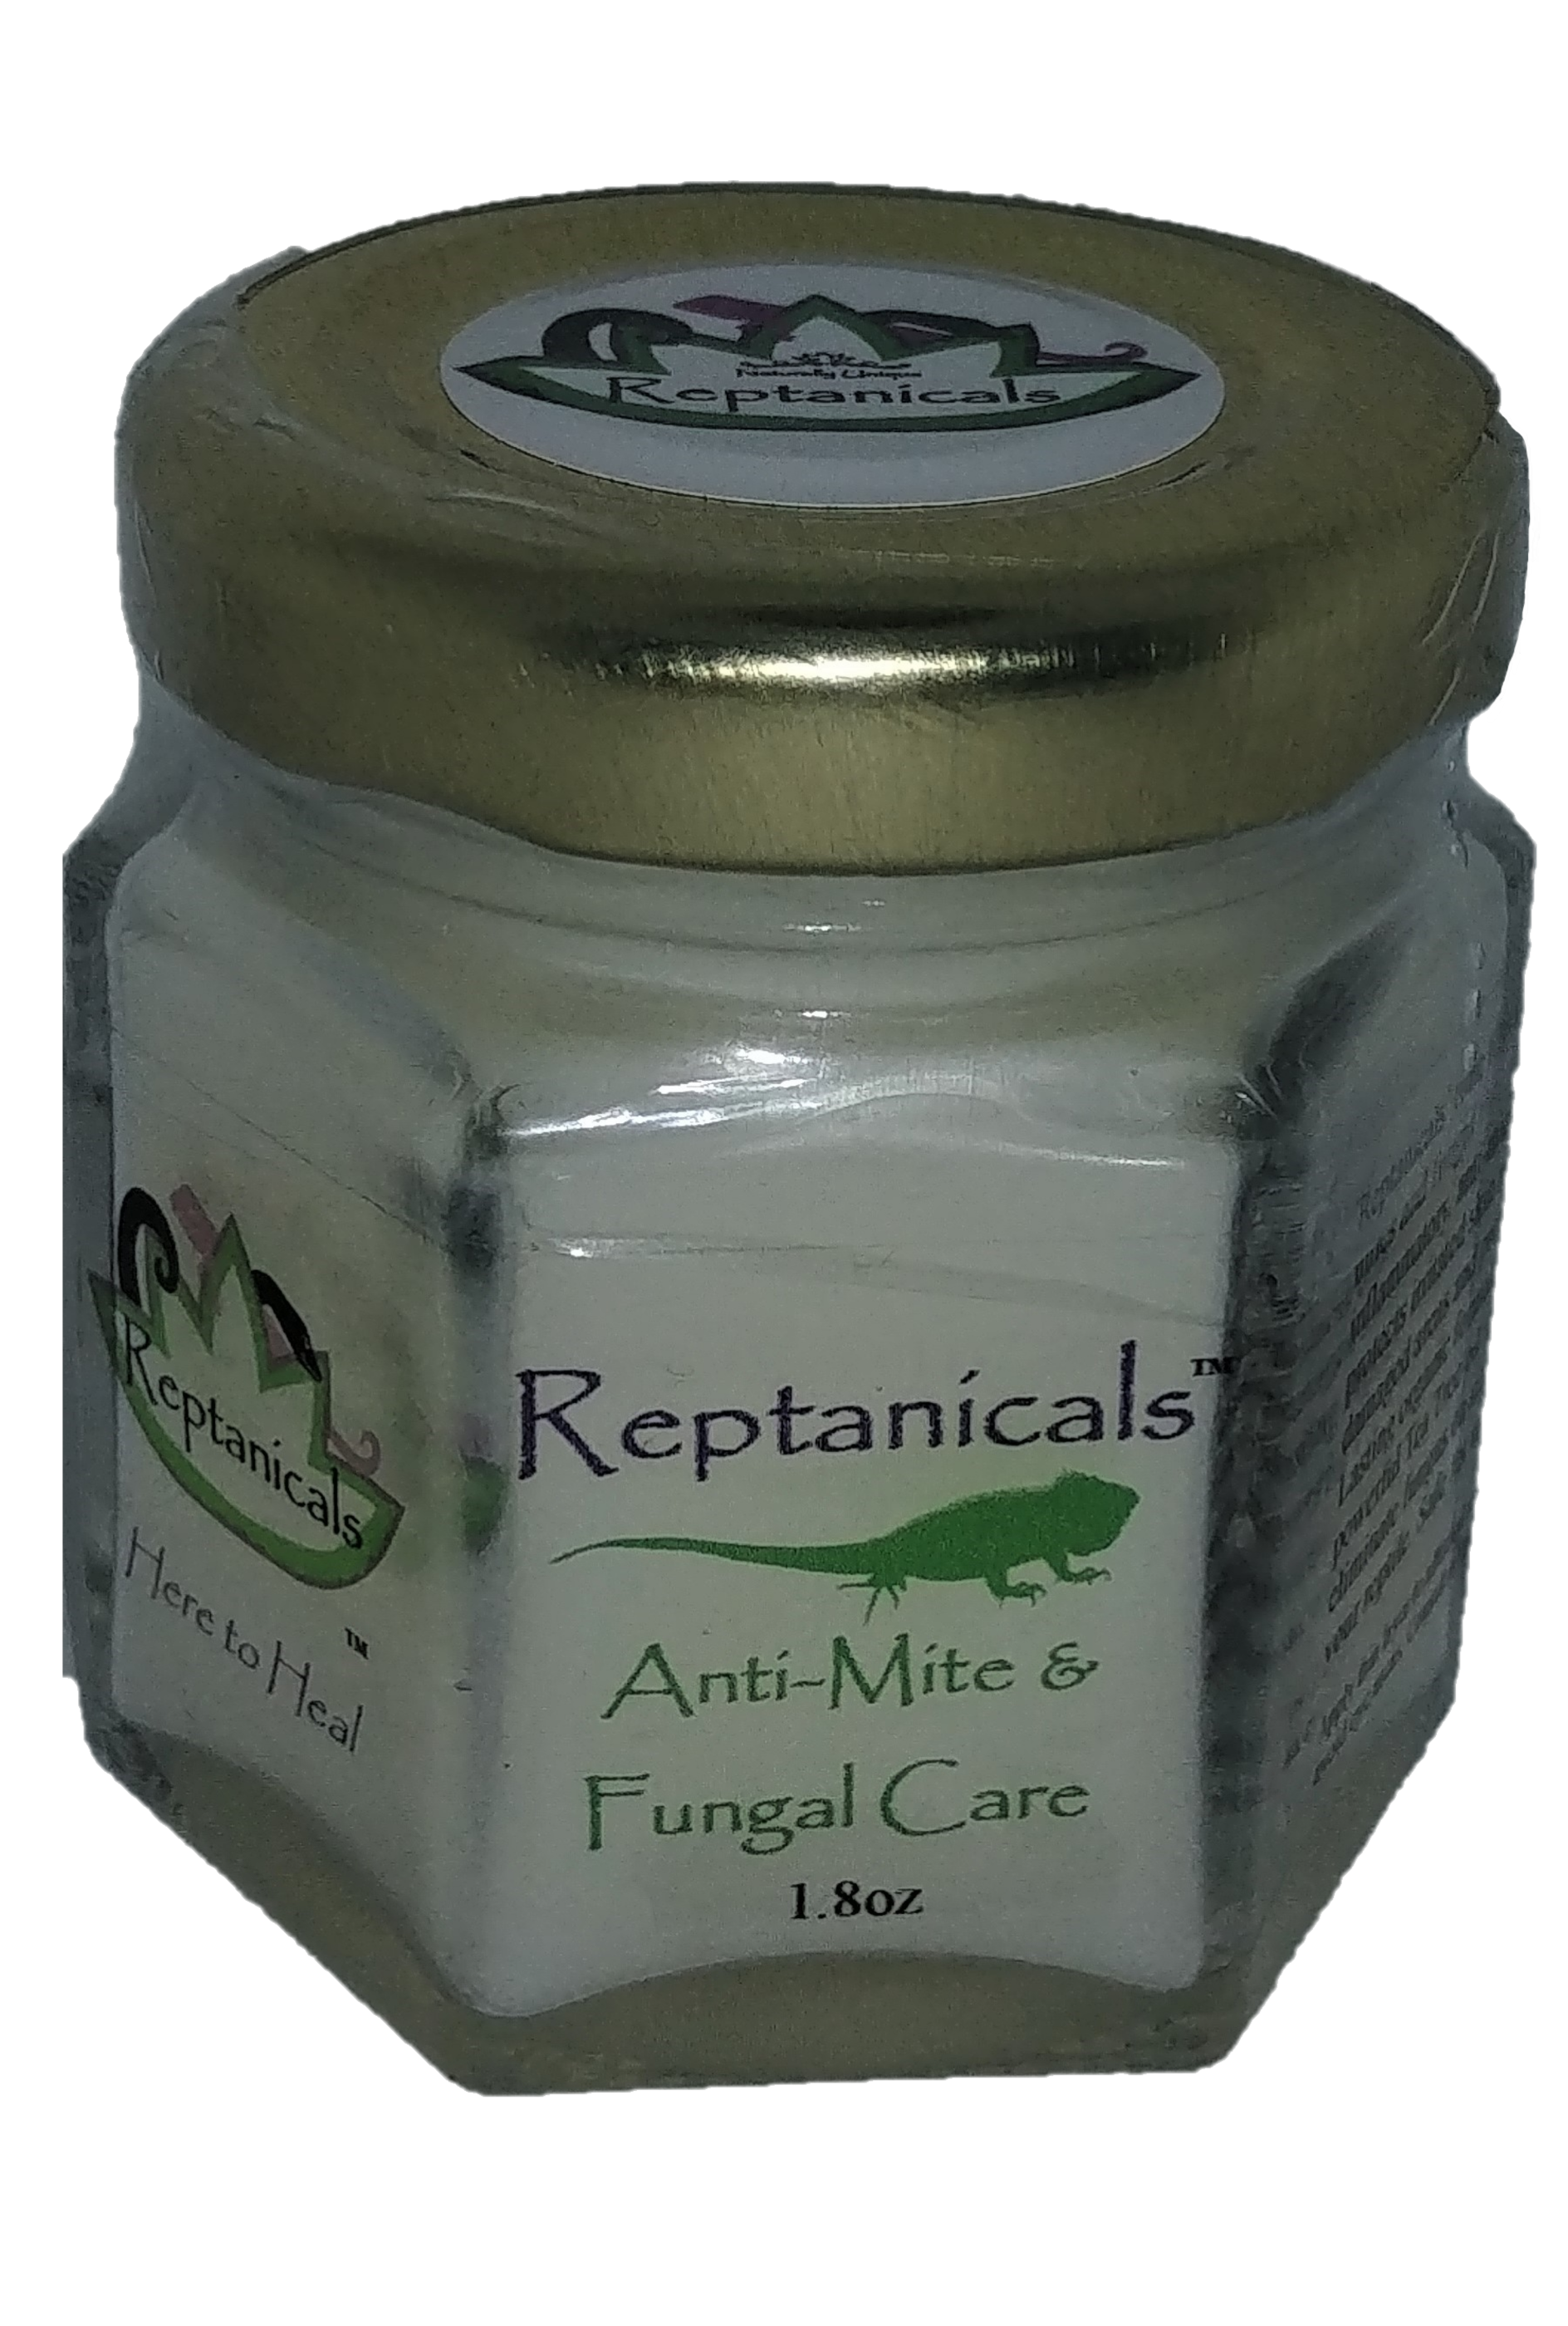 Anti-Mite & Fungal Care – Reptanicals